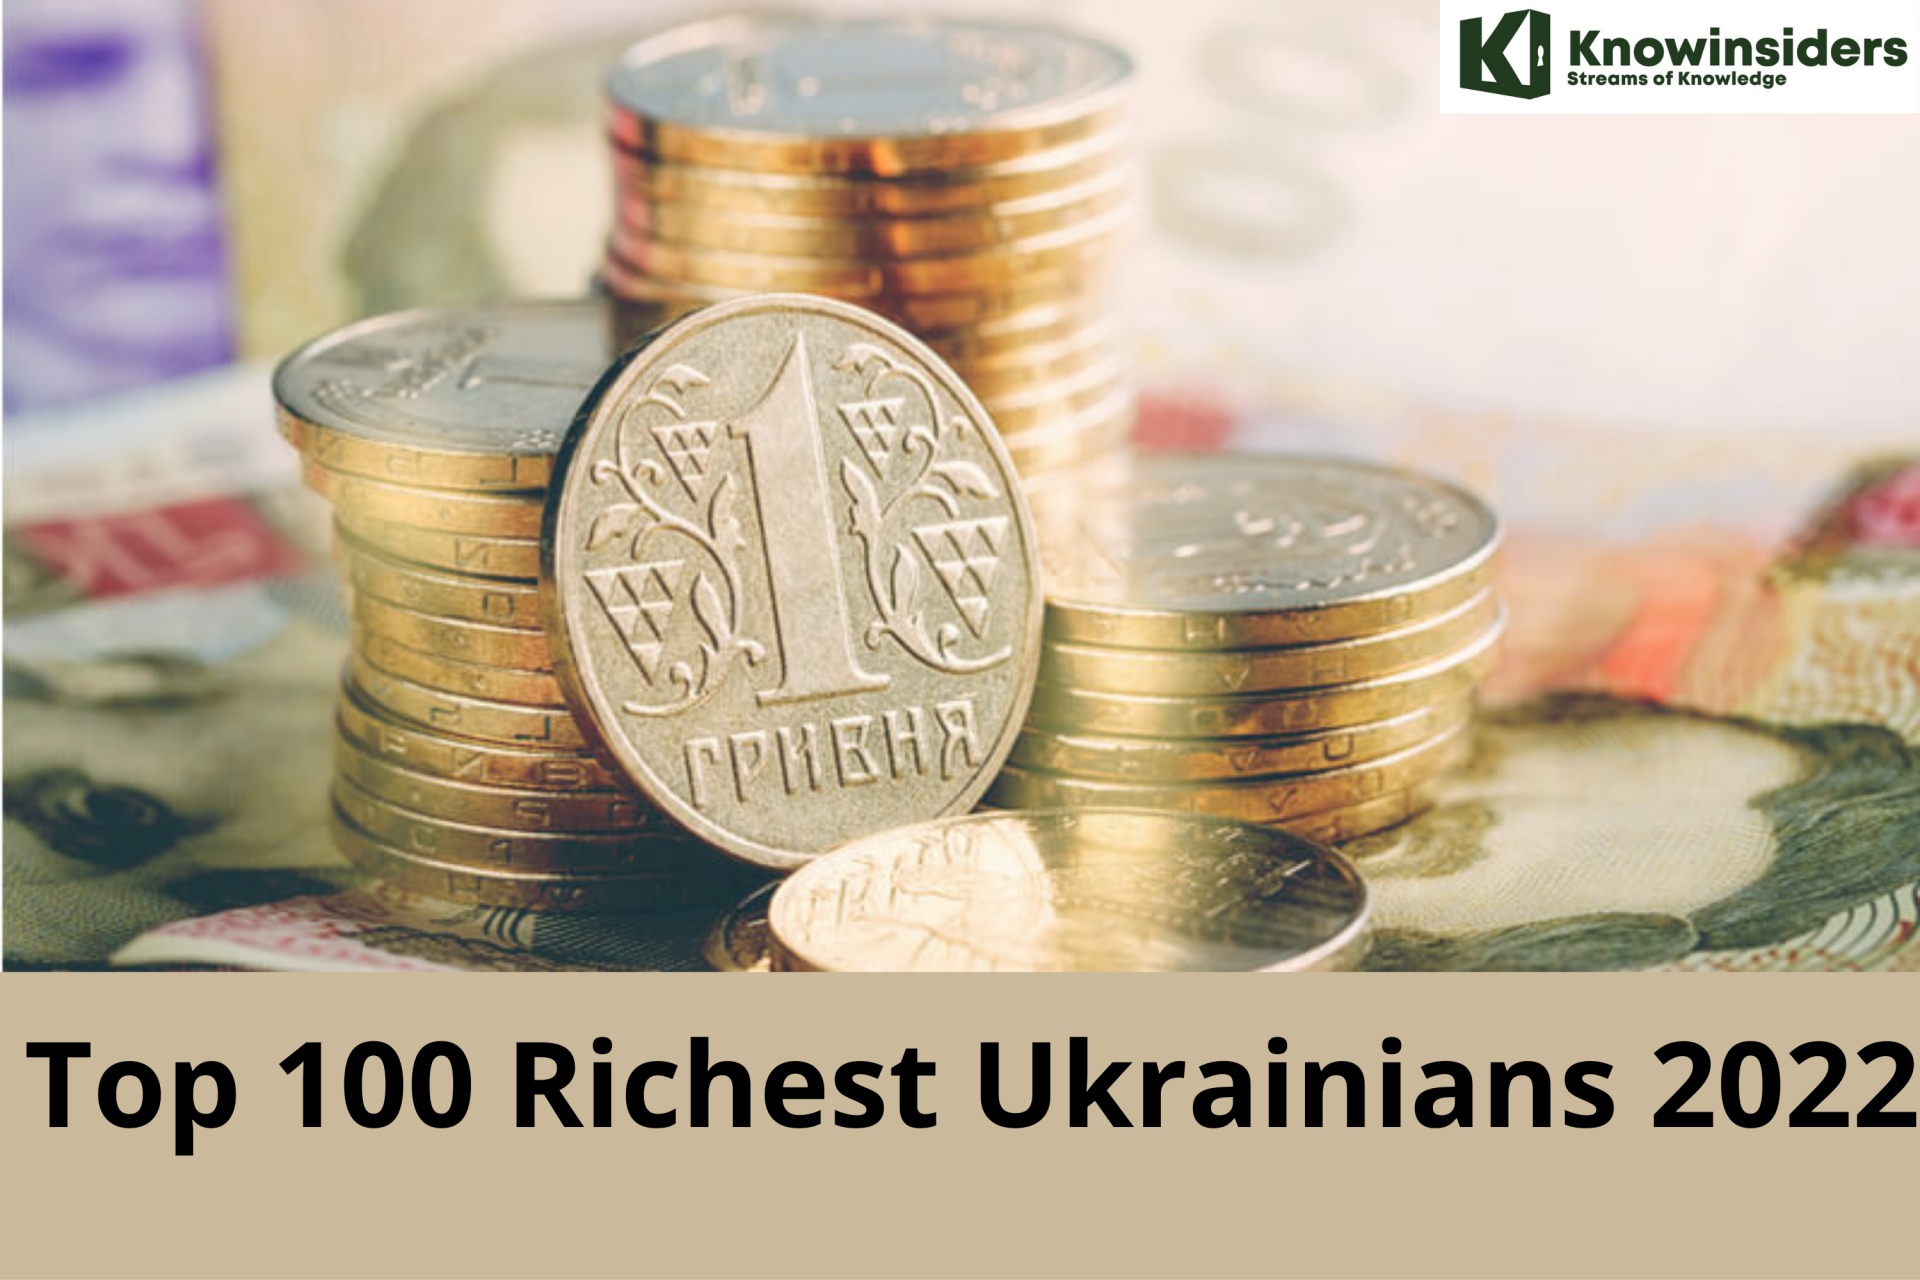 Top 100 Richest Ukrainians 2022